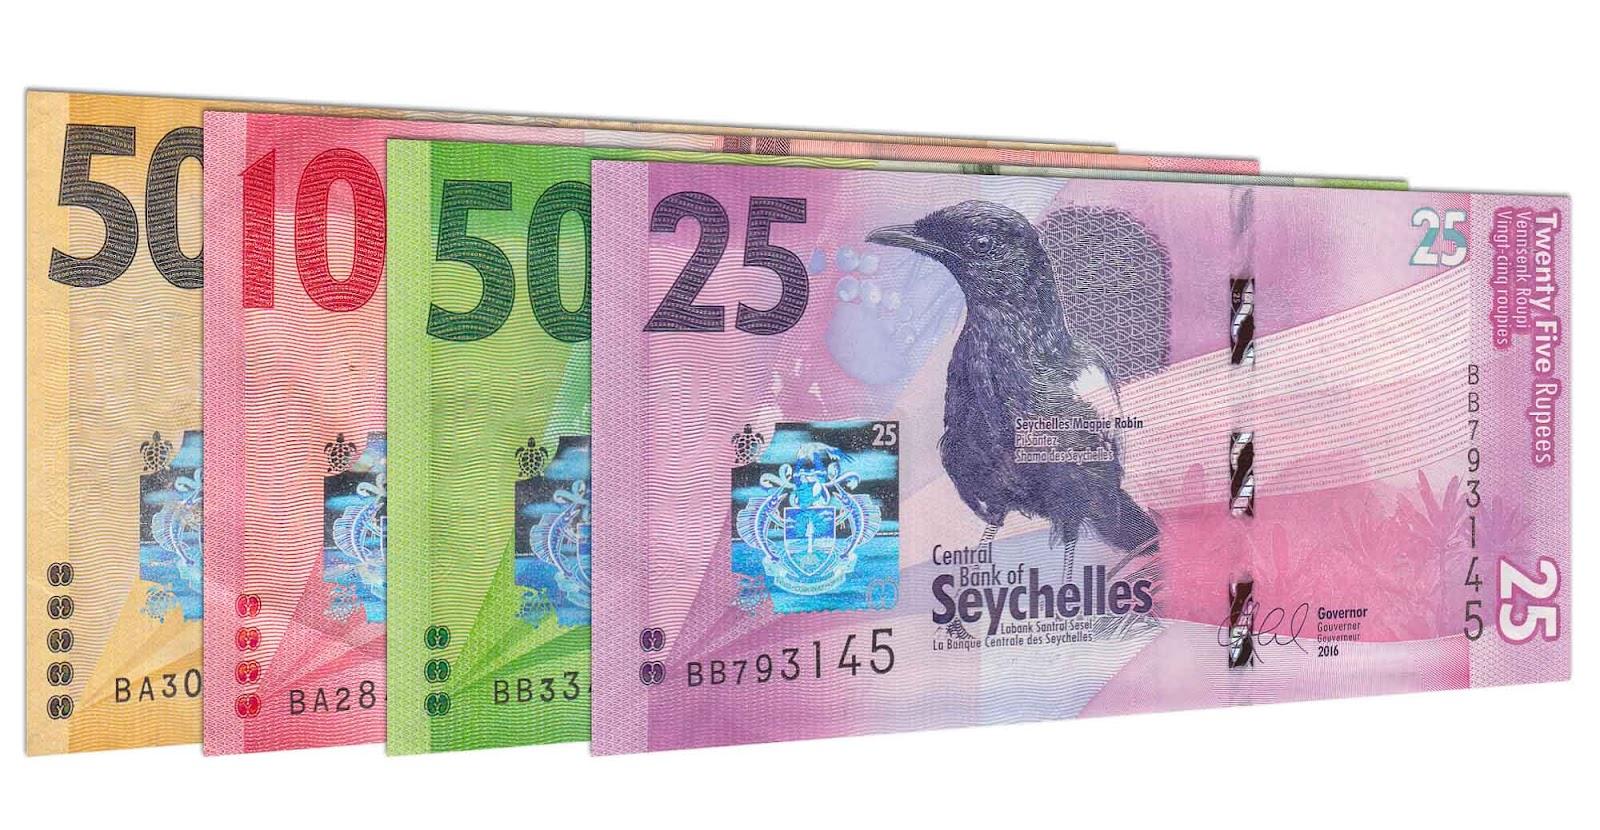 Seychelles banknote series